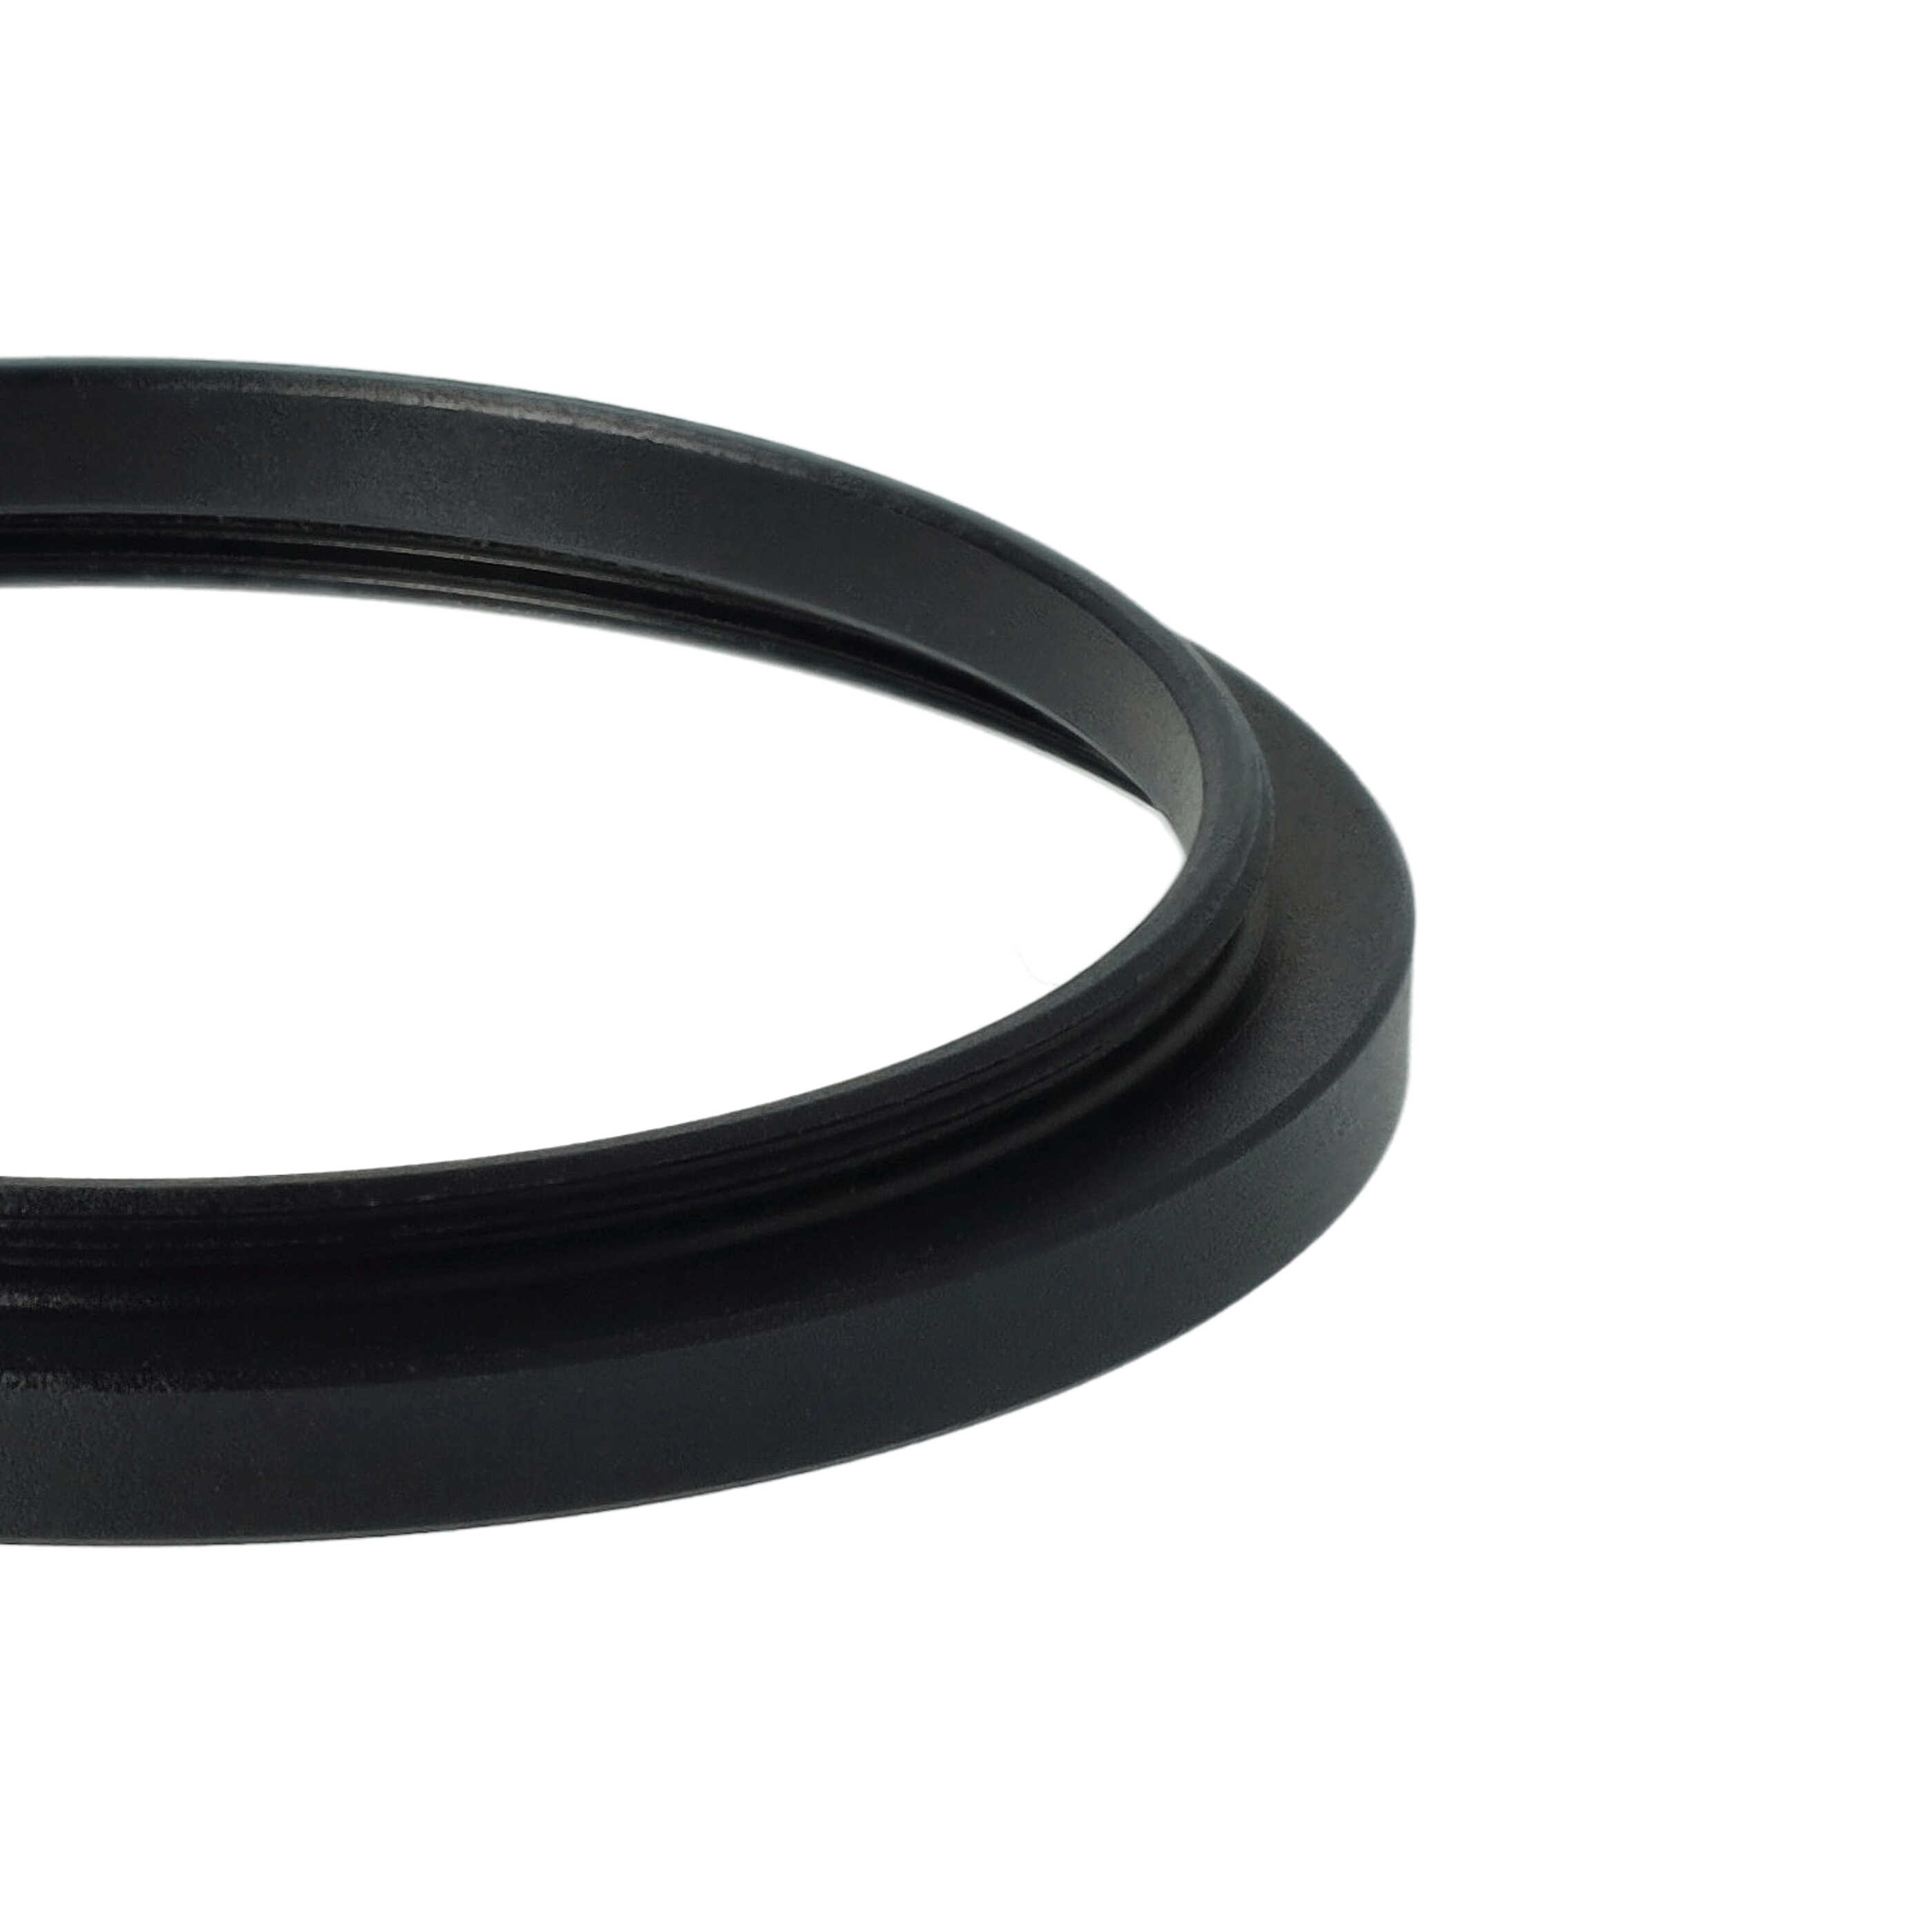 Step-Up-Ring Adapter 46 mm auf 49 mm passend für diverse Kamera-Objektive - Filteradapter